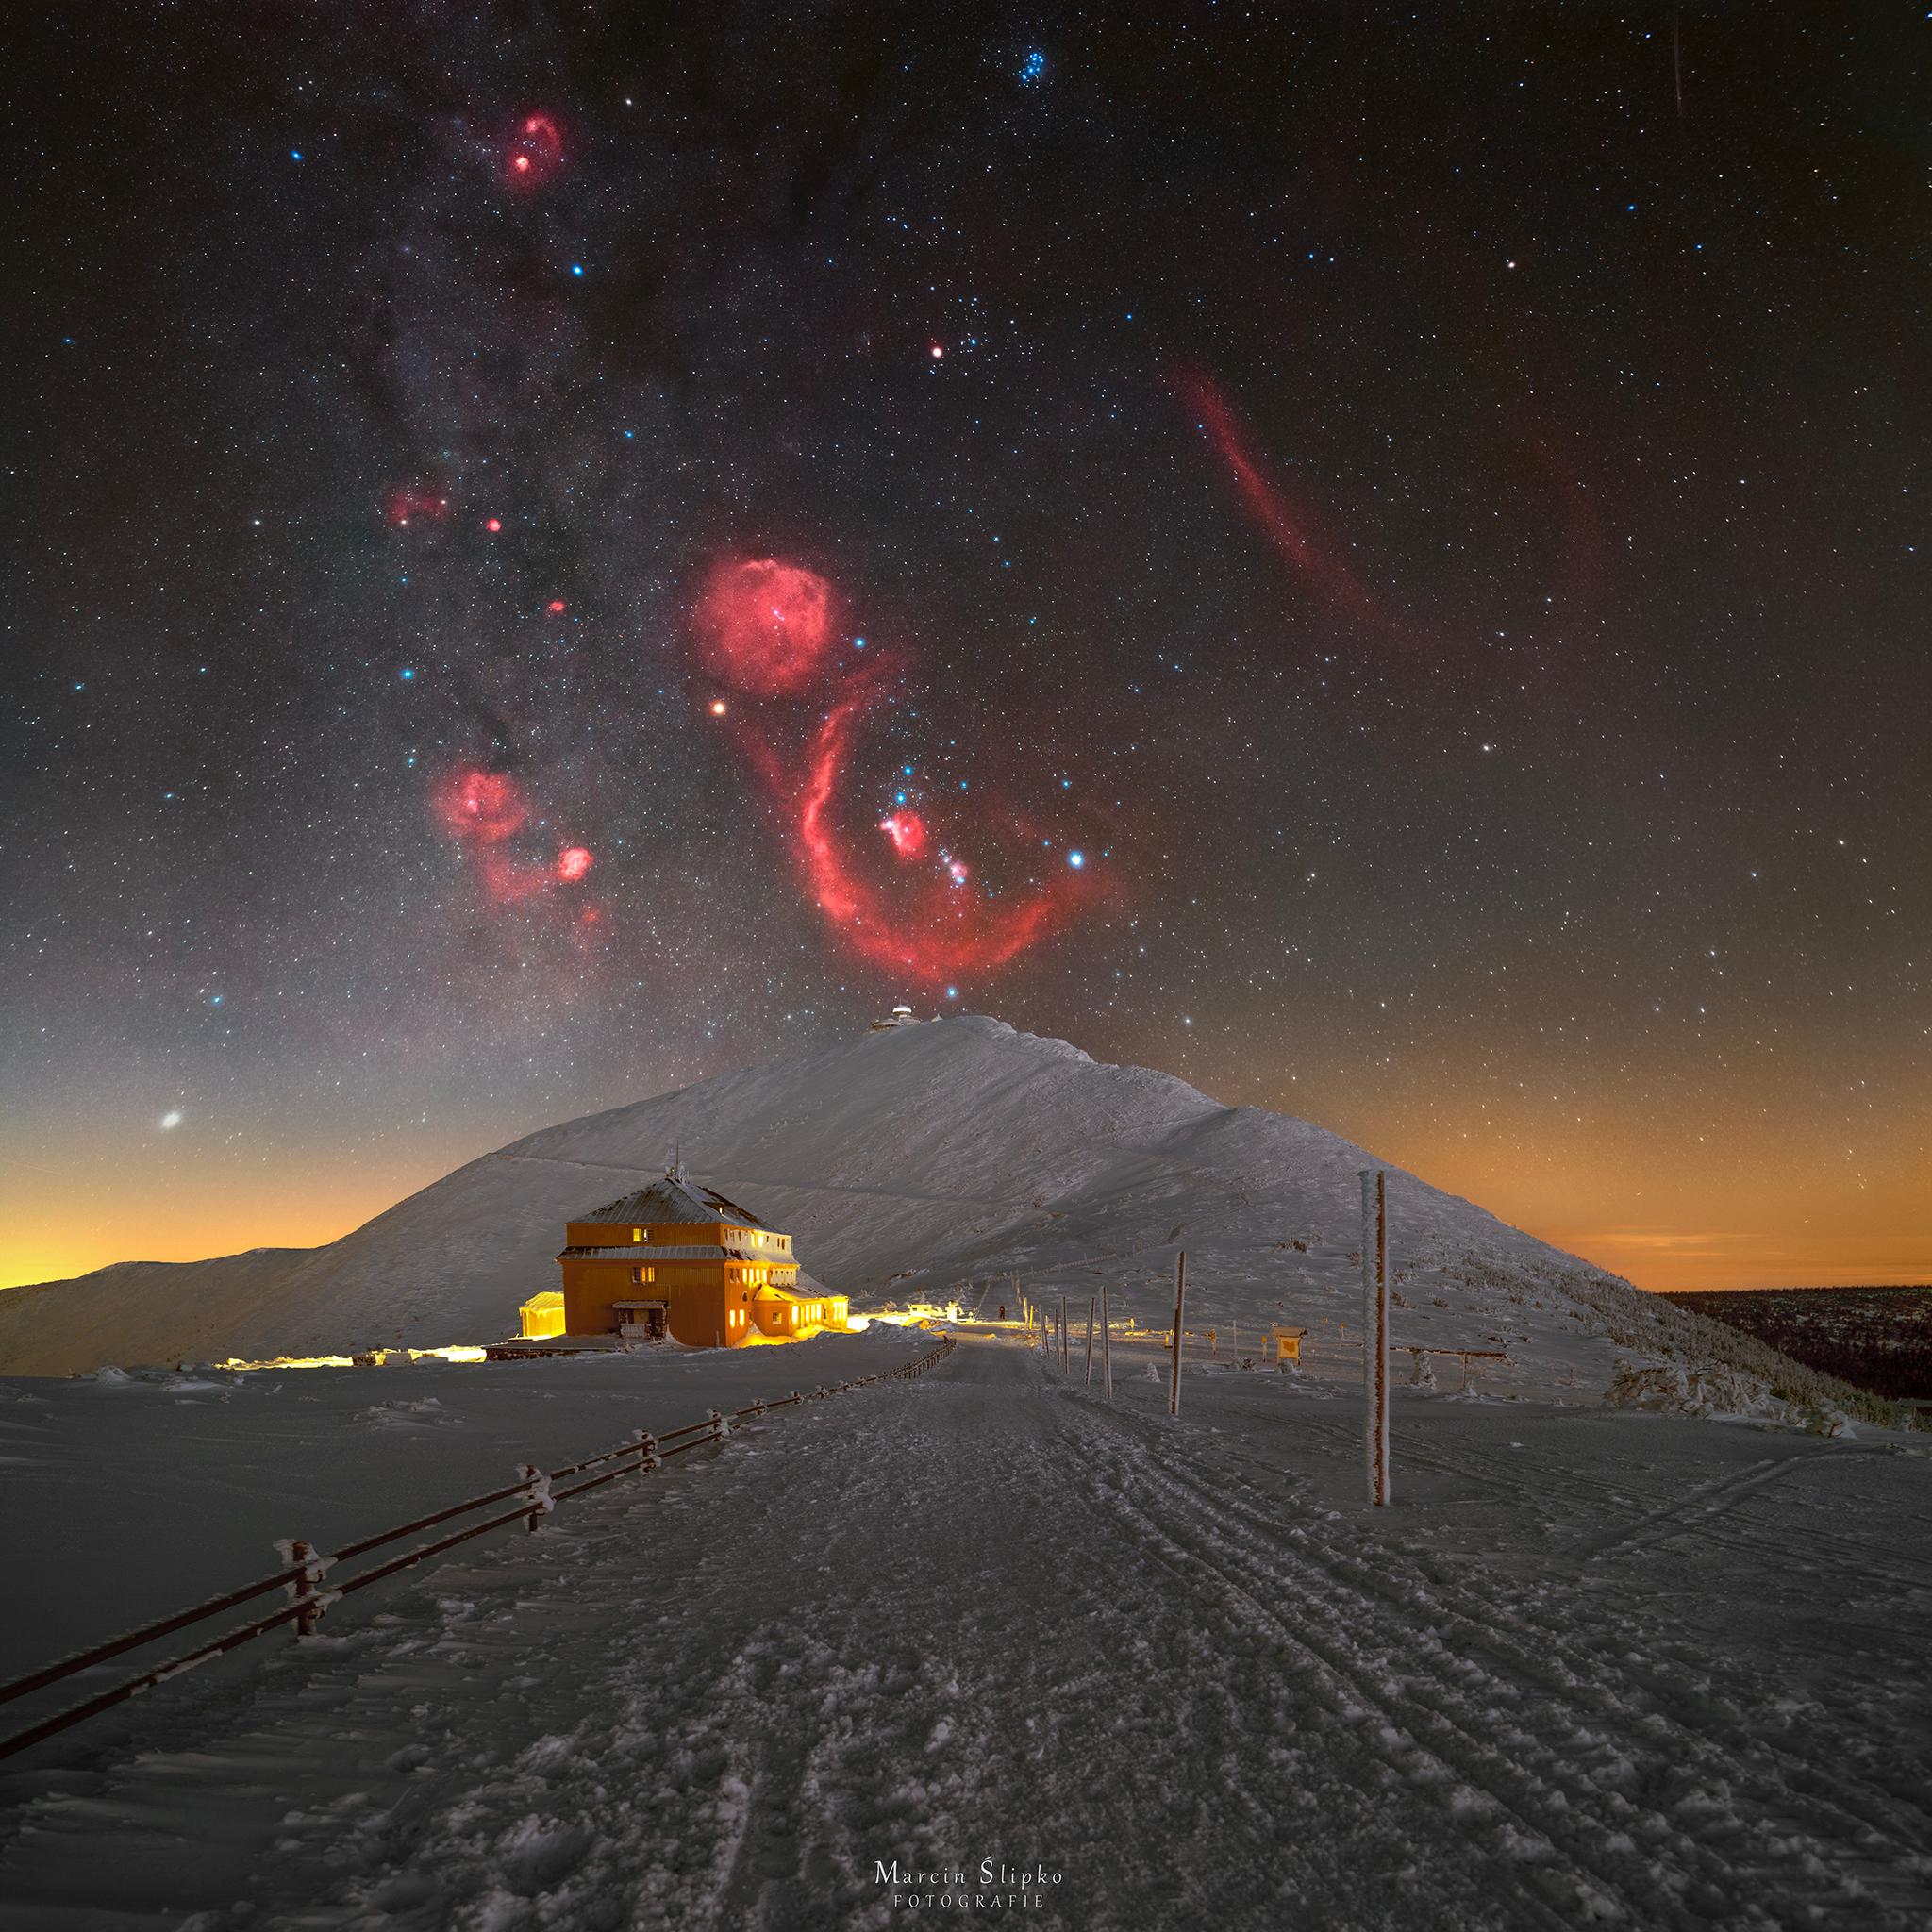 مشهدٌ طبيعيّ ثلجيّ مع تلَّةٍ كبيرة في المُنتَصَف. يوجد فوق التلّة حقل نجومٍ تظهر فيه نجوم وسُدُم كوكبة الجبّار، مع الوهج الأحمر السُّدُم في تبايُنٍ صارخ مع للسماء المُظلِمة والثلج الساطع.